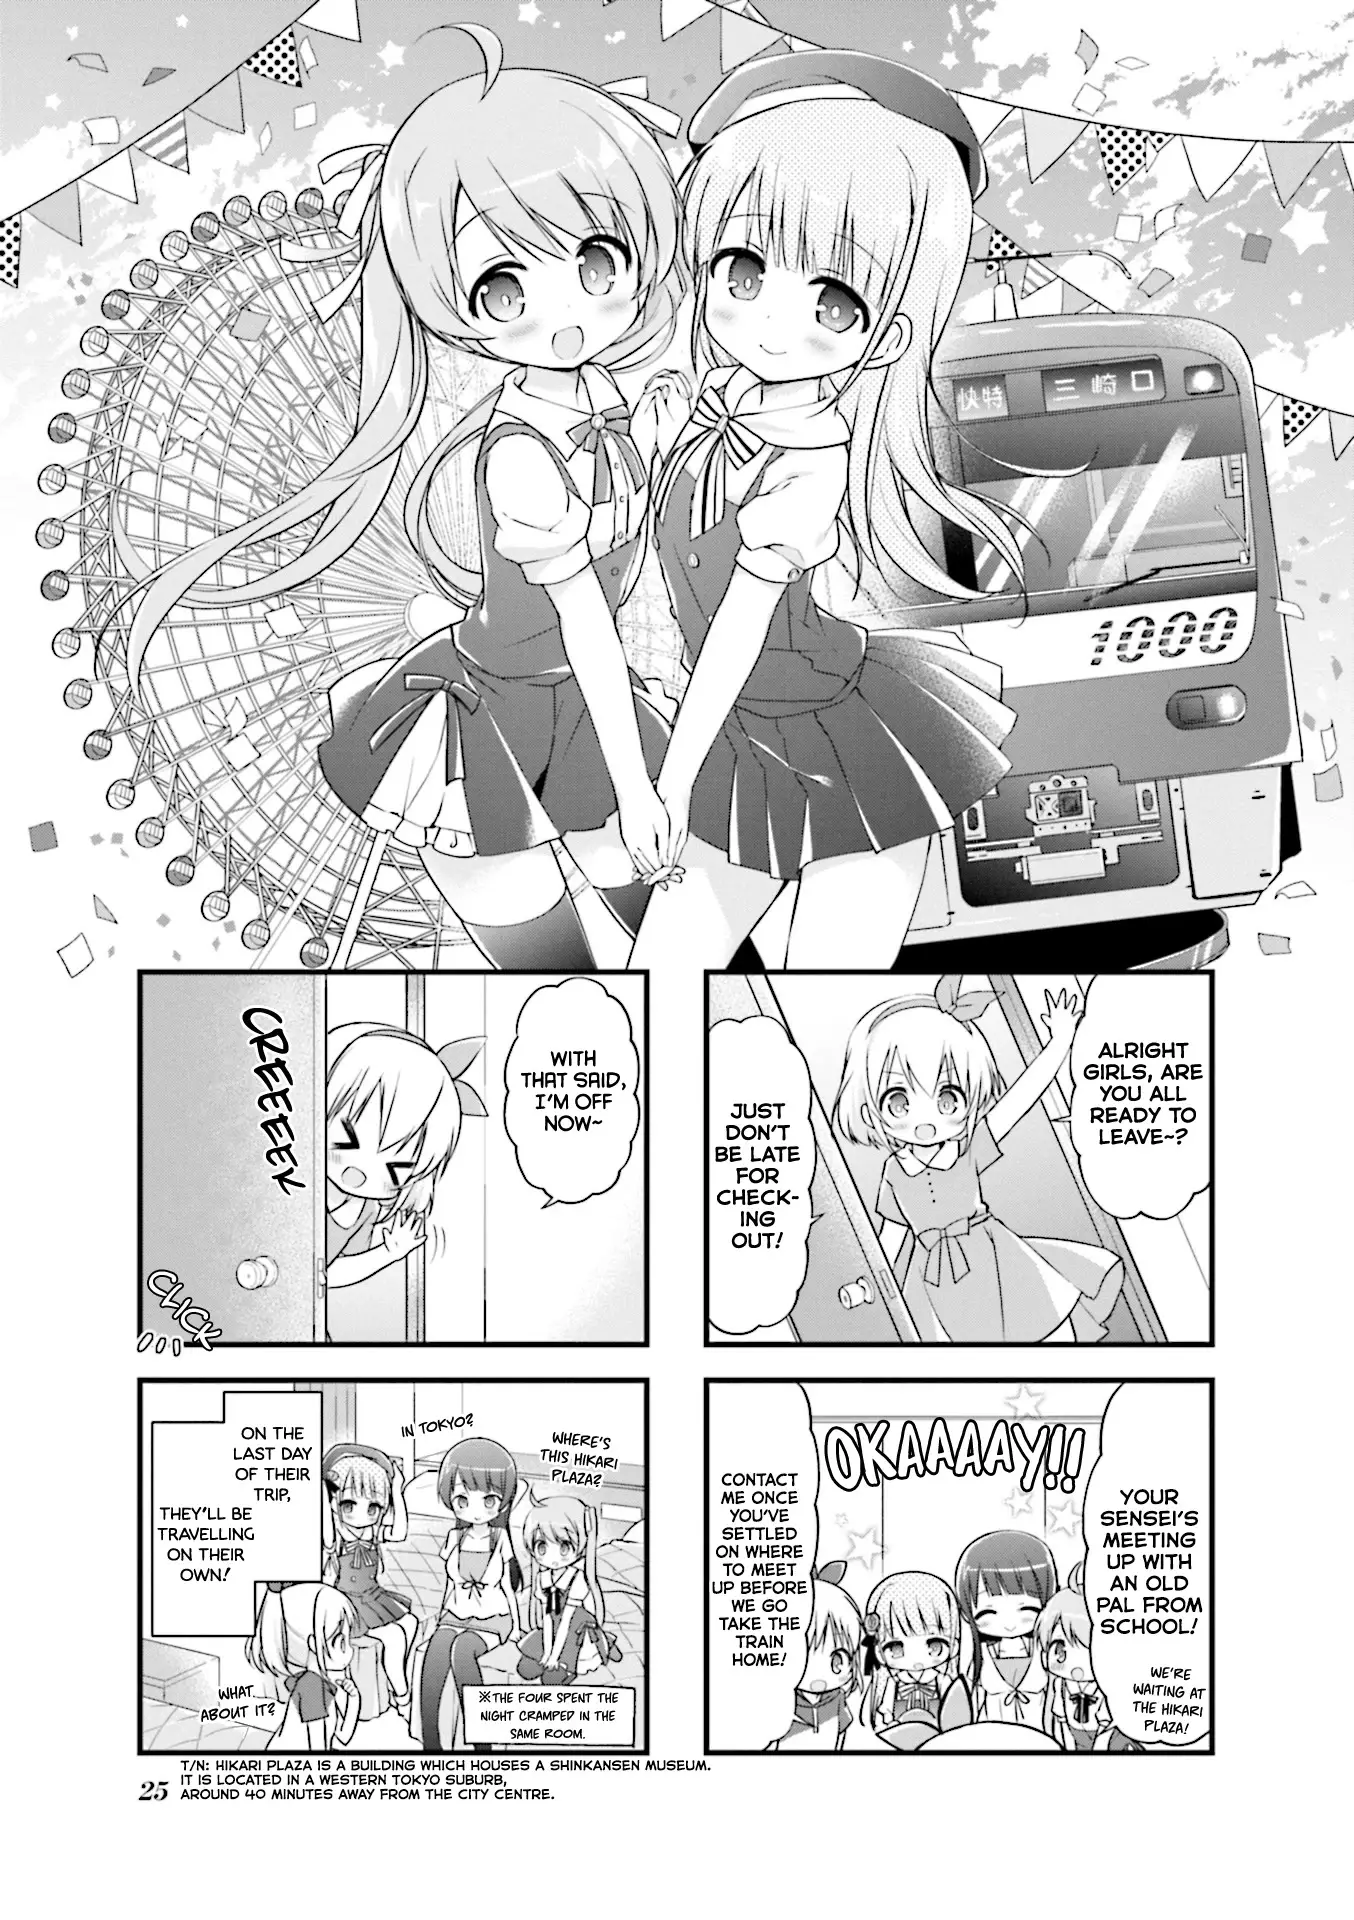 Hatsukoi*rail Trip - 16 page 1-8054236d